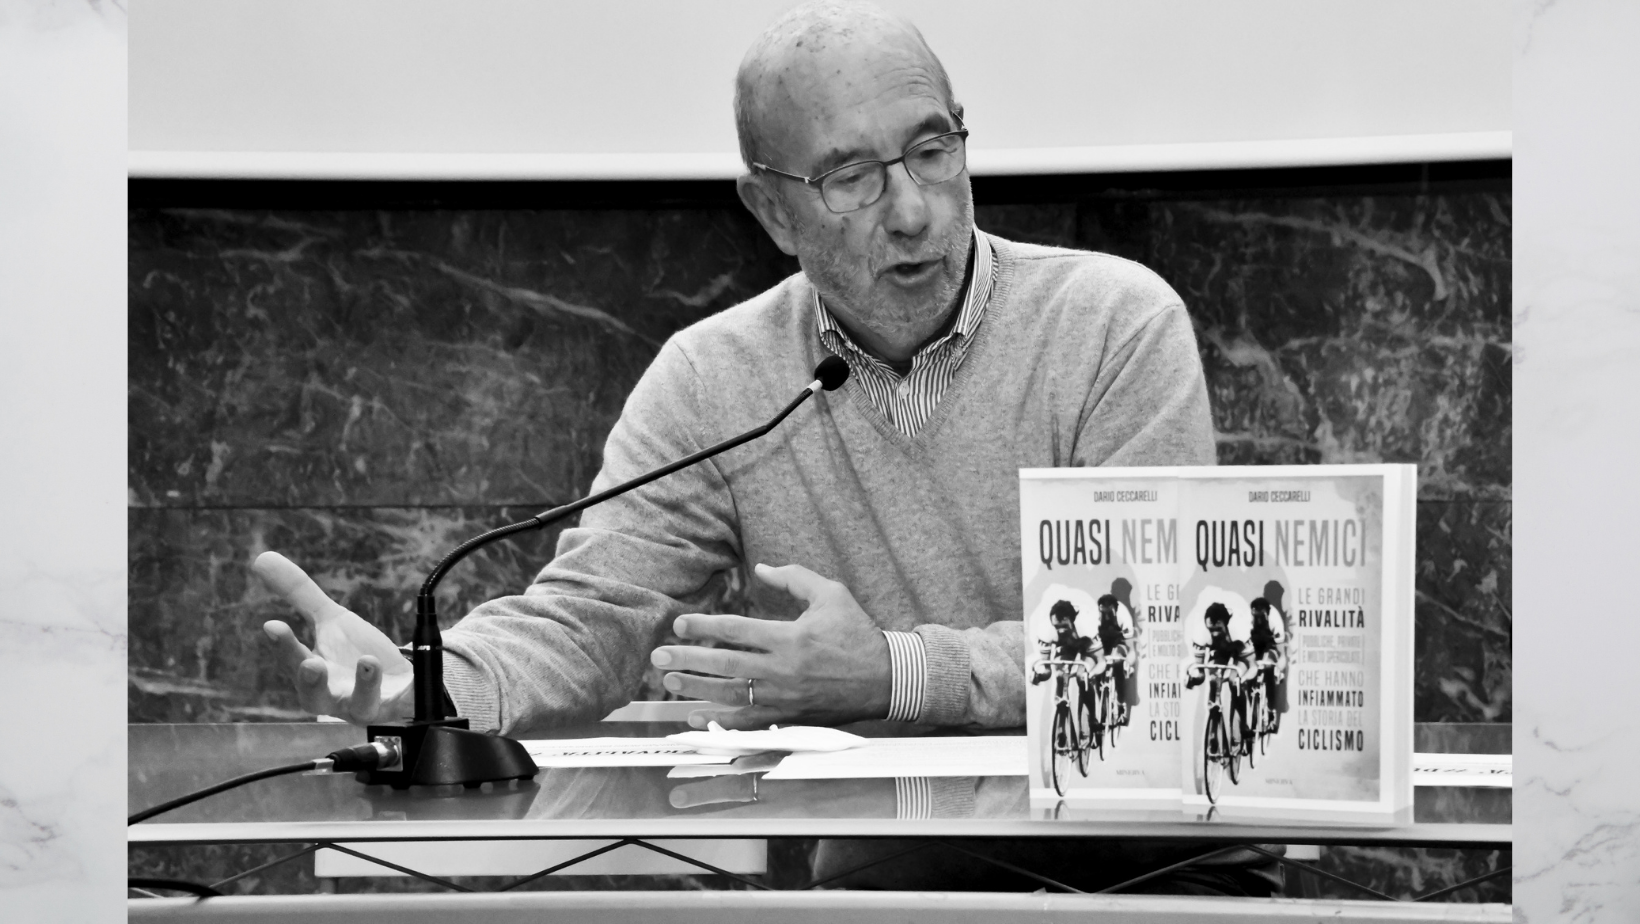 “Quasi nemici”, i dualismi del ciclismo nel libro di Dario Ceccarelli